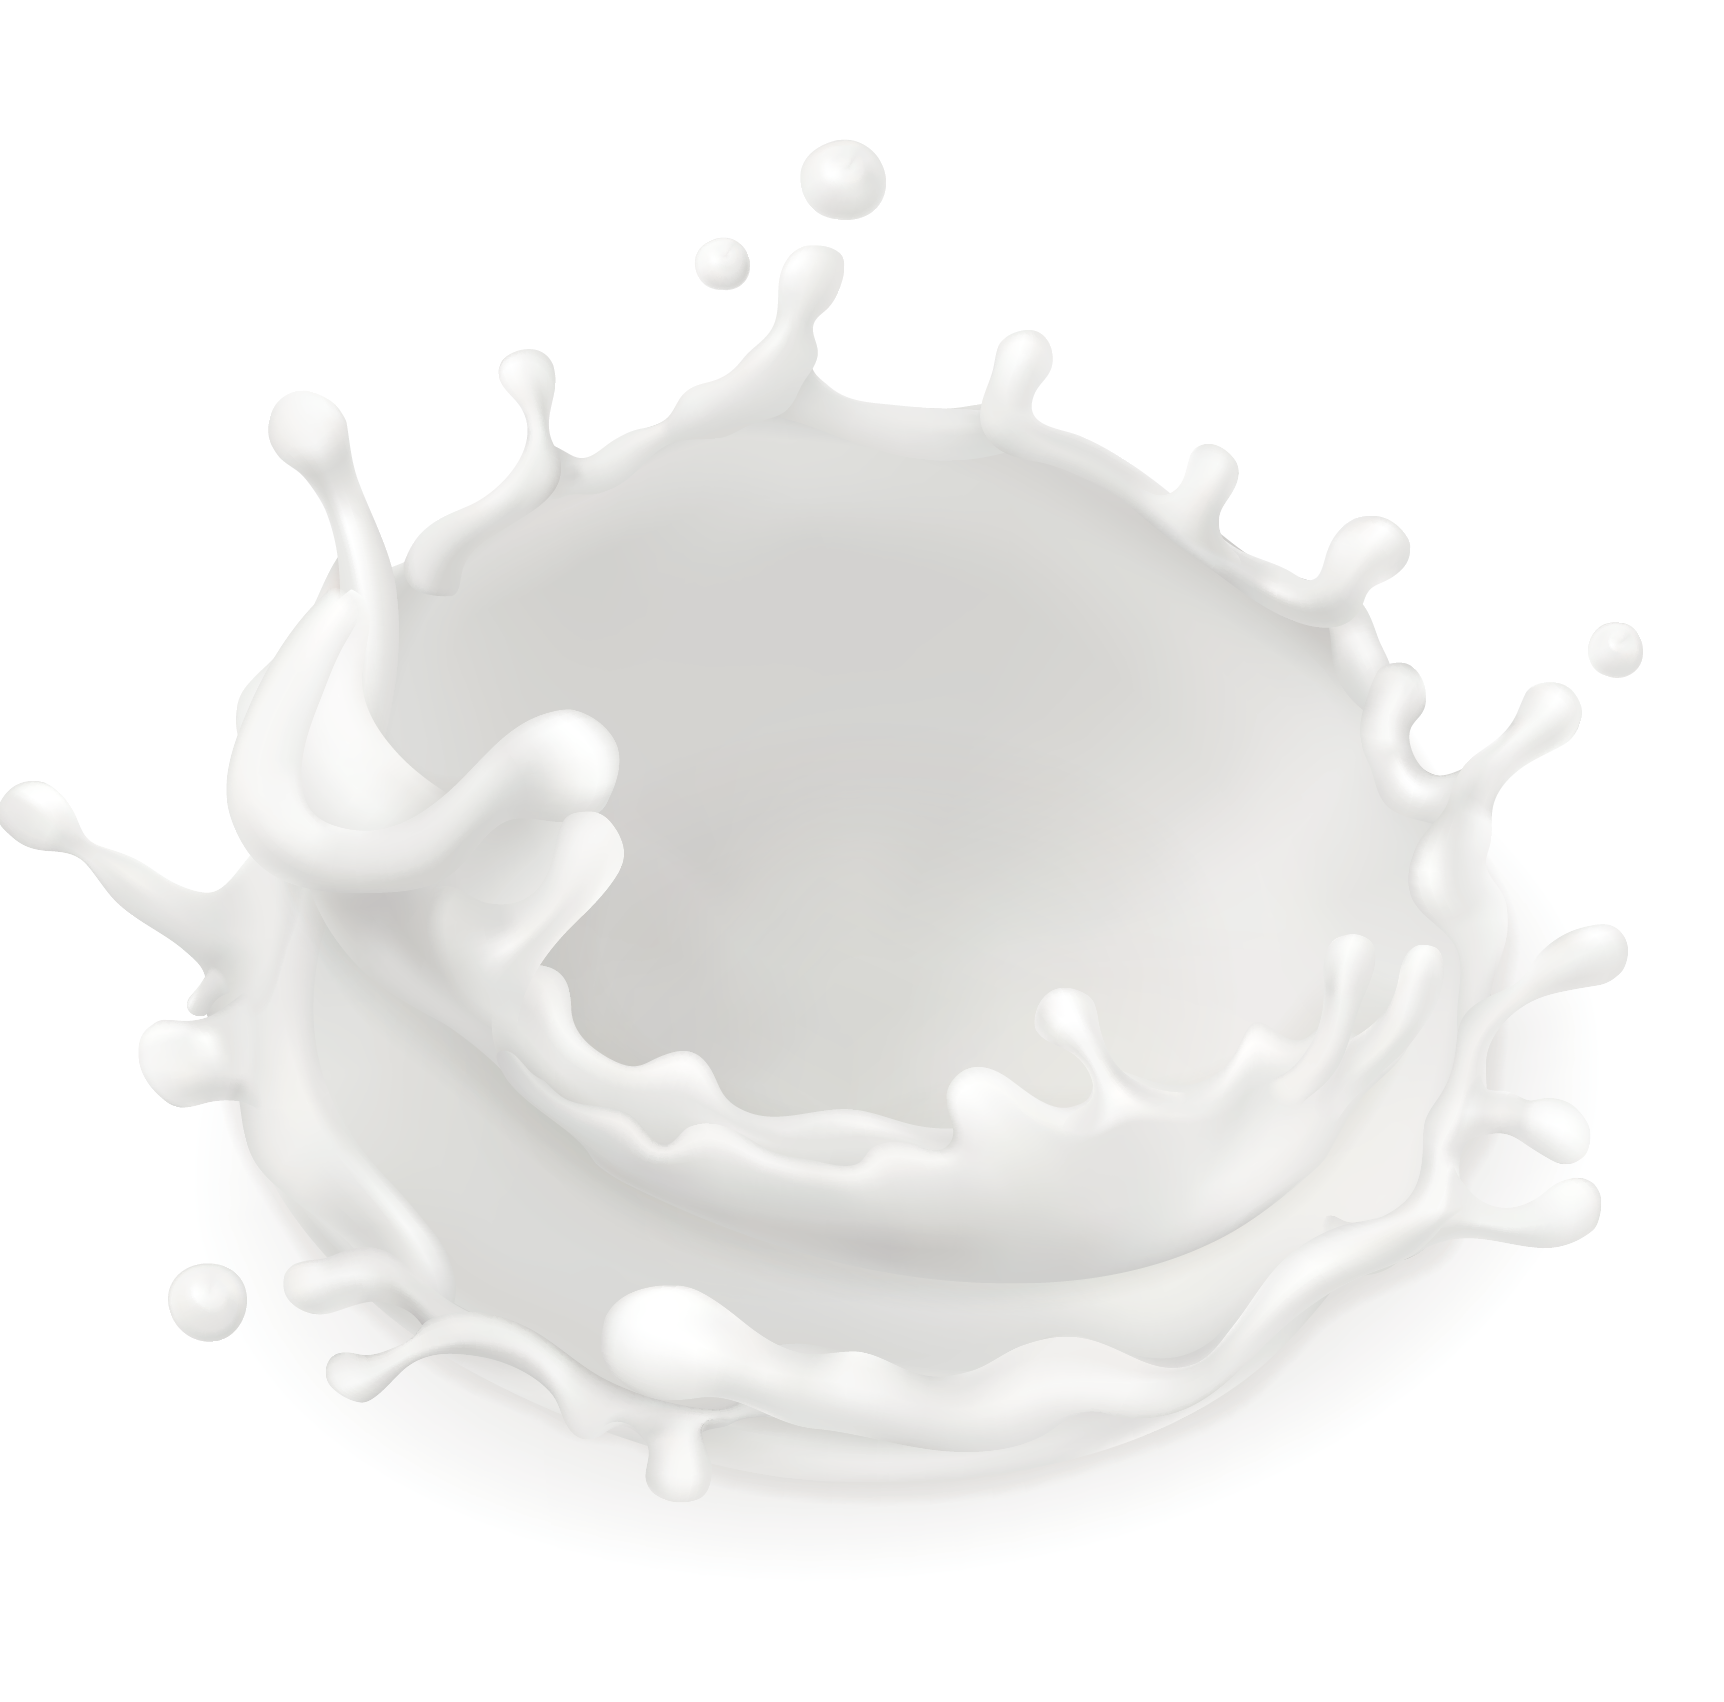 Milk Splash PNG | PNG Mart